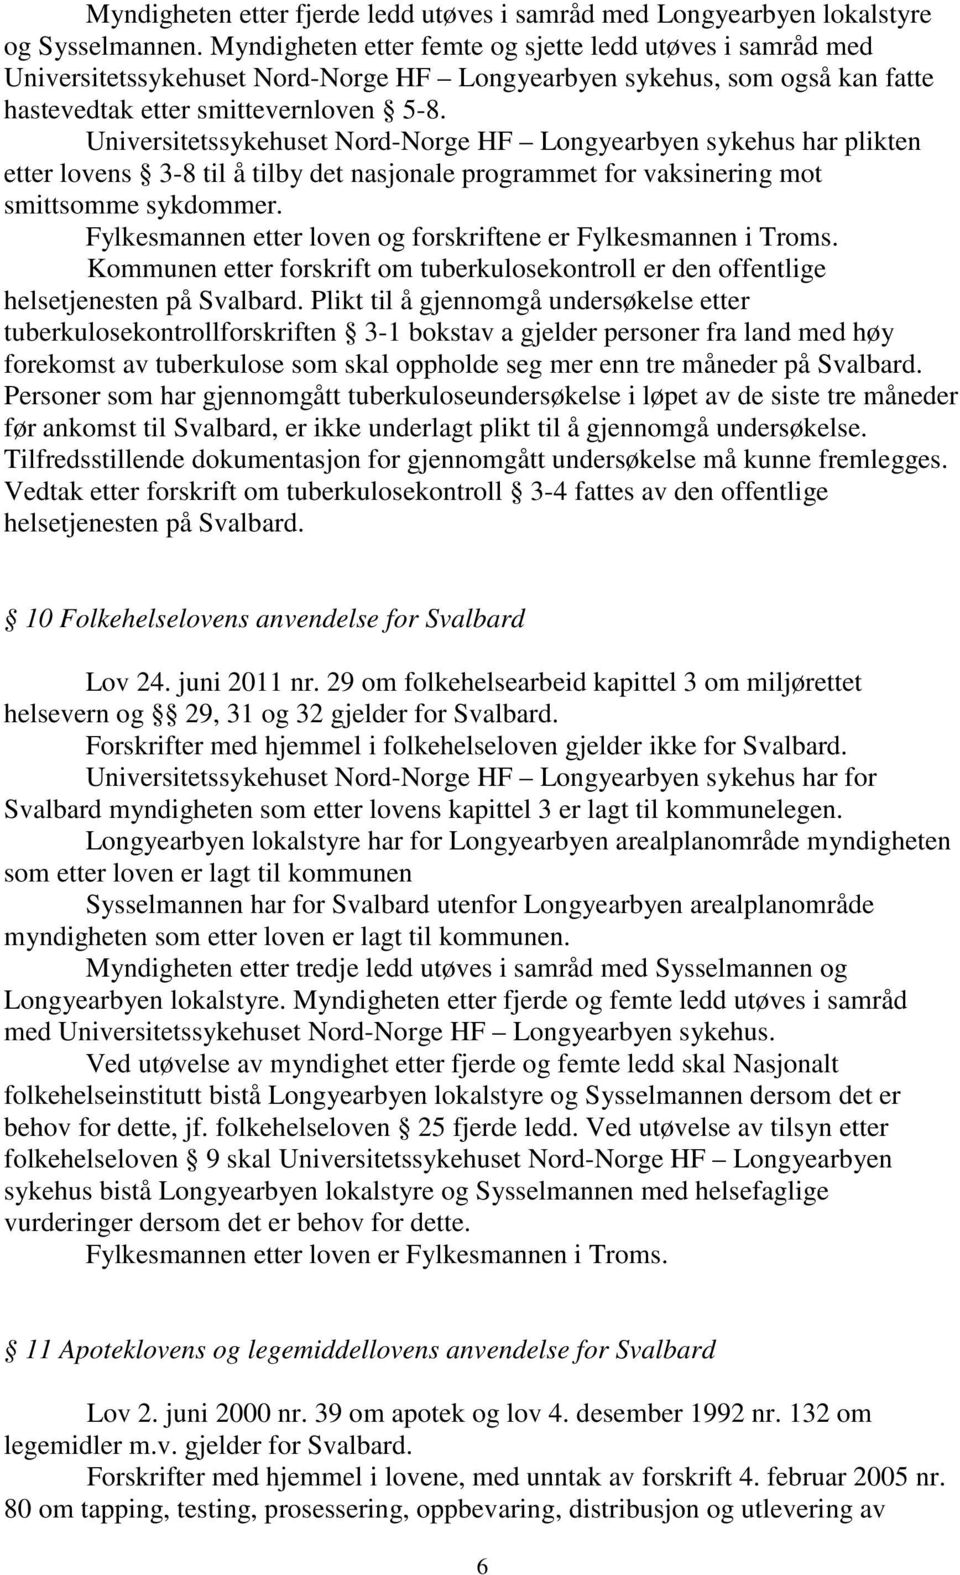 Universitetssykehuset Nord-Norge HF Longyearbyen sykehus har plikten etter lovens 3-8 til å tilby det nasjonale programmet for vaksinering mot smittsomme sykdommer.